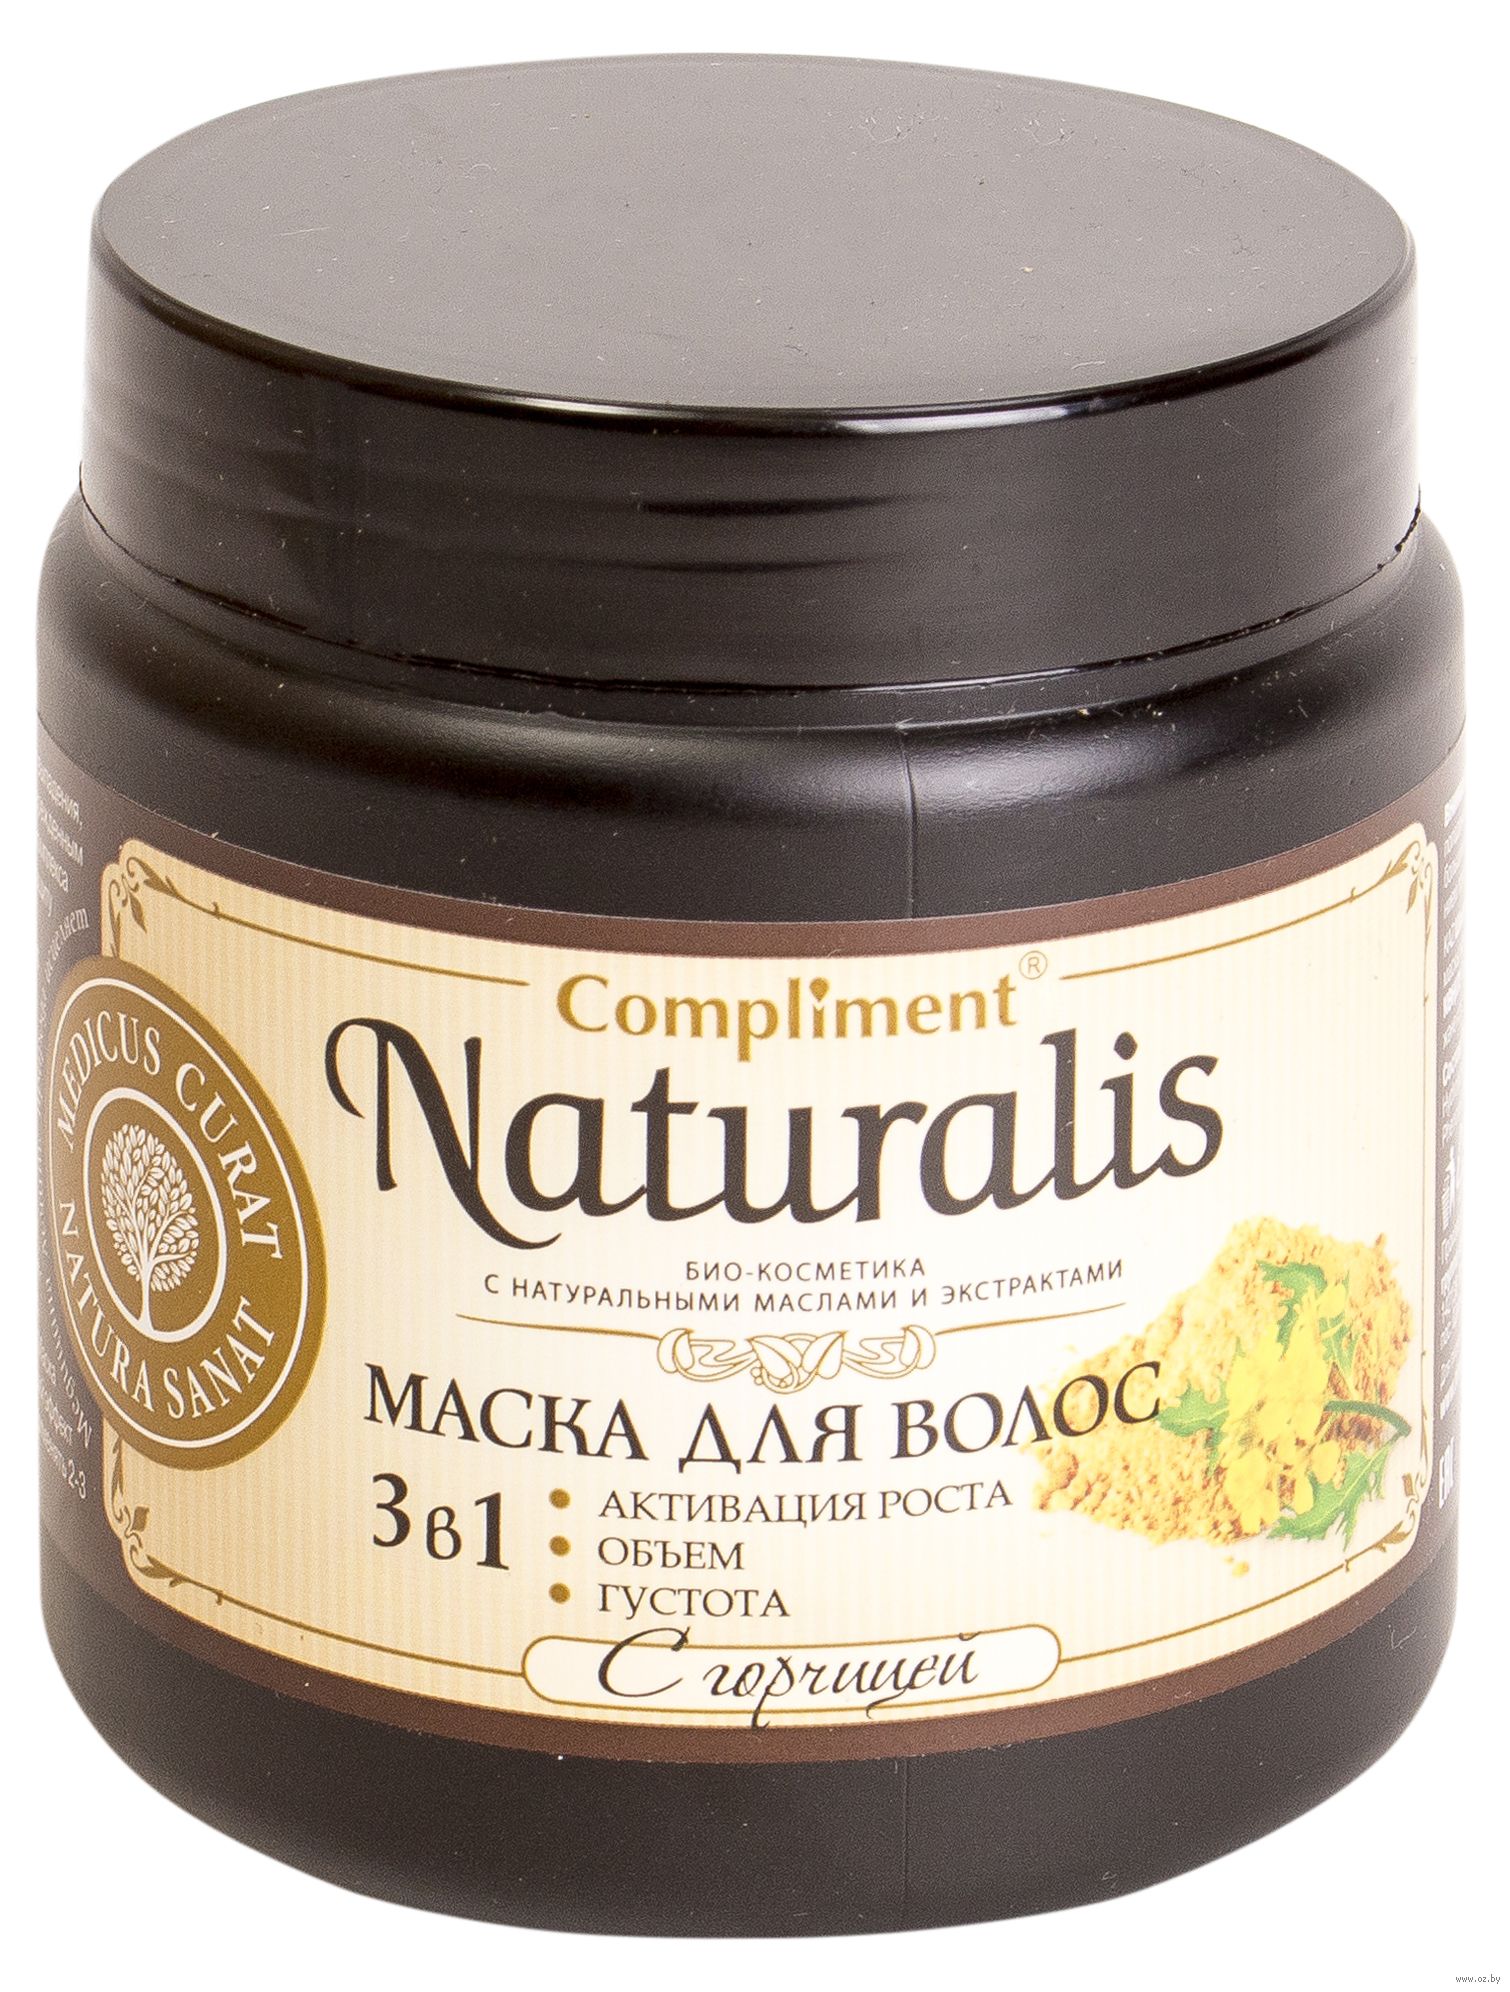 Маска для волос полезная косметика отзывы. Маска перцовая для волос Naturalis. Маска д/волос "compliment Naturalis" с горчицей 500 мл (8368). Compliment маска для волос. Compliment Naturalis маска с горчицей.